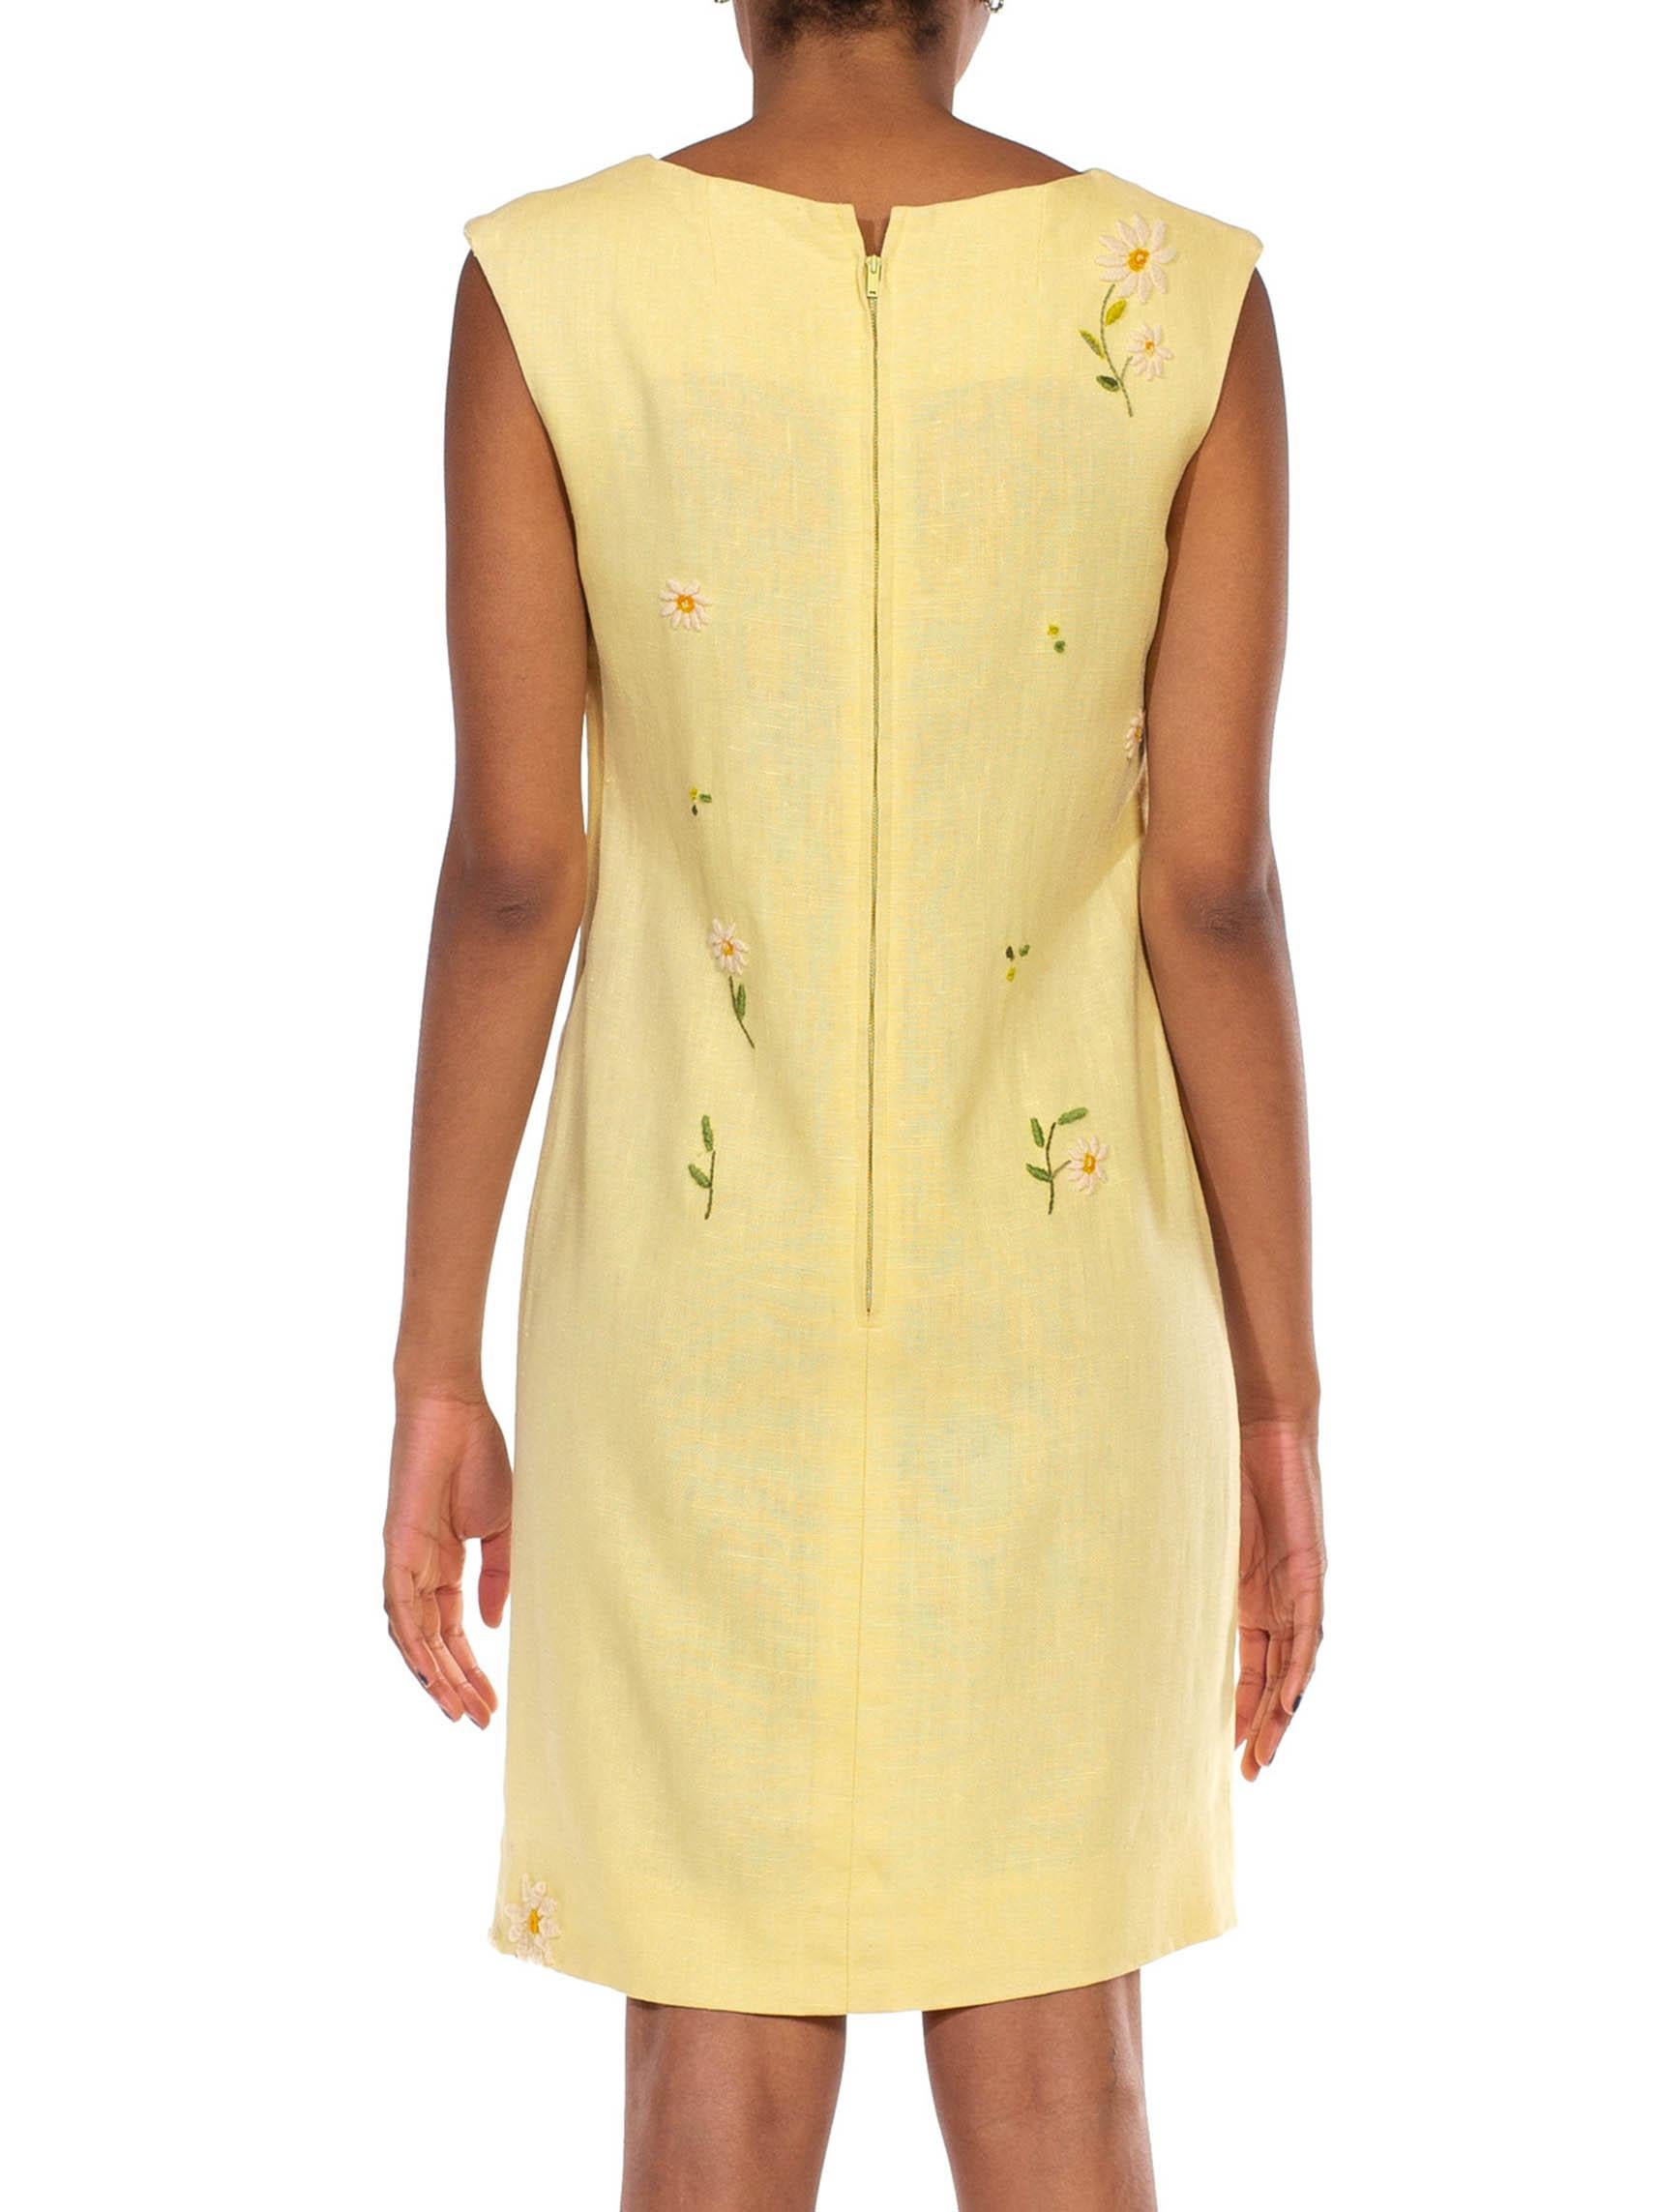 1960S Butter Yellow Linen Daisy Embroidered Mod Dress 2